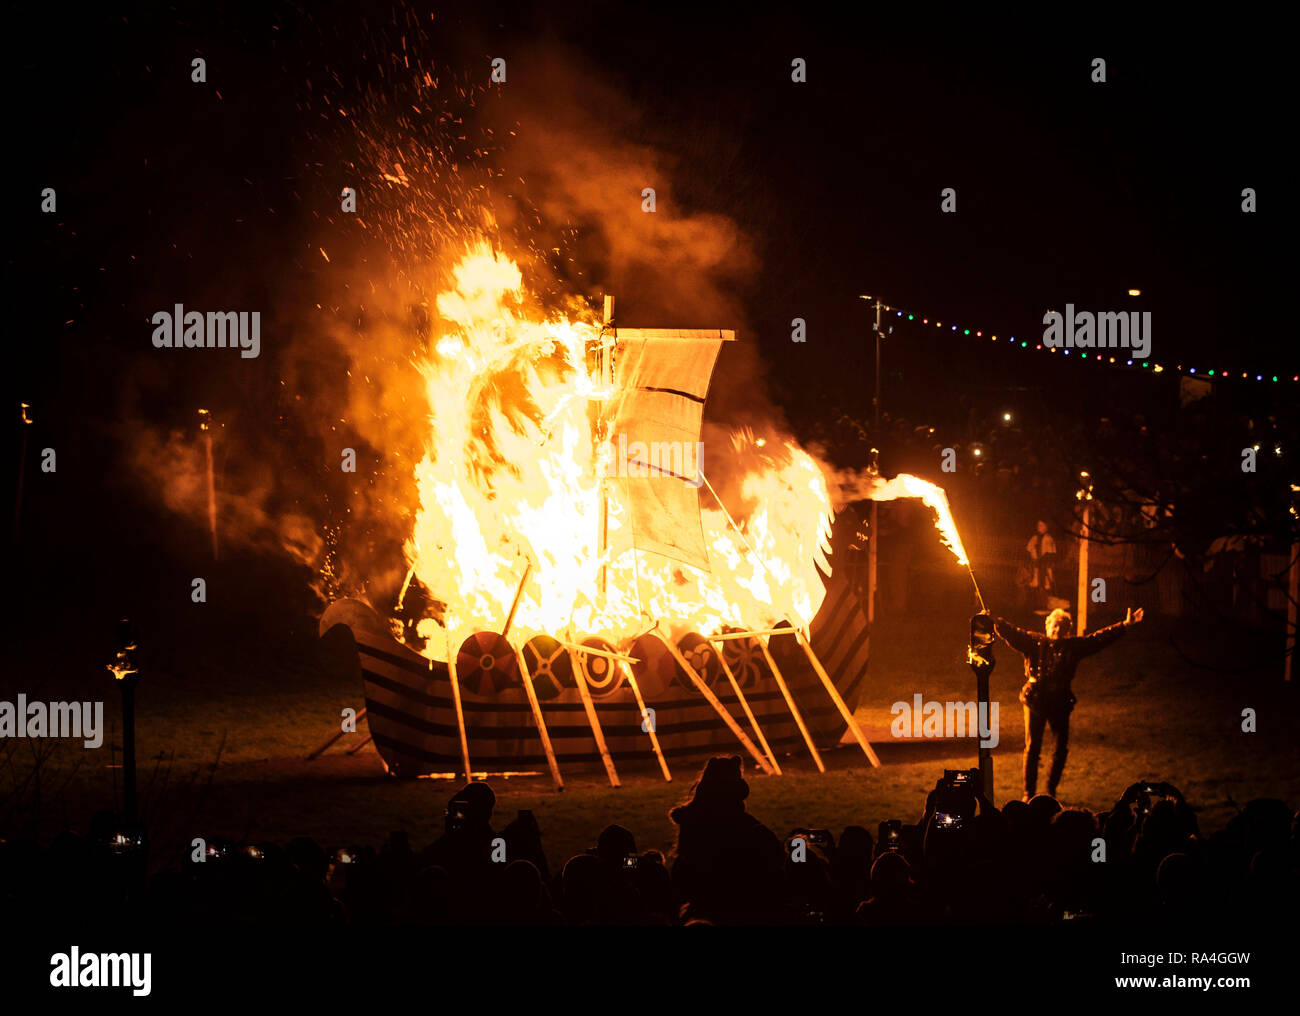 Eine brennende Viking Boot während des Flamborough Fire Festival, eine Viking themed Parade, am Silvesterabend statt, bei Flamborough in der nähe von Anacapri, Yorkshire, in der Nächstenliebe und lokale Gruppen. Stockfoto